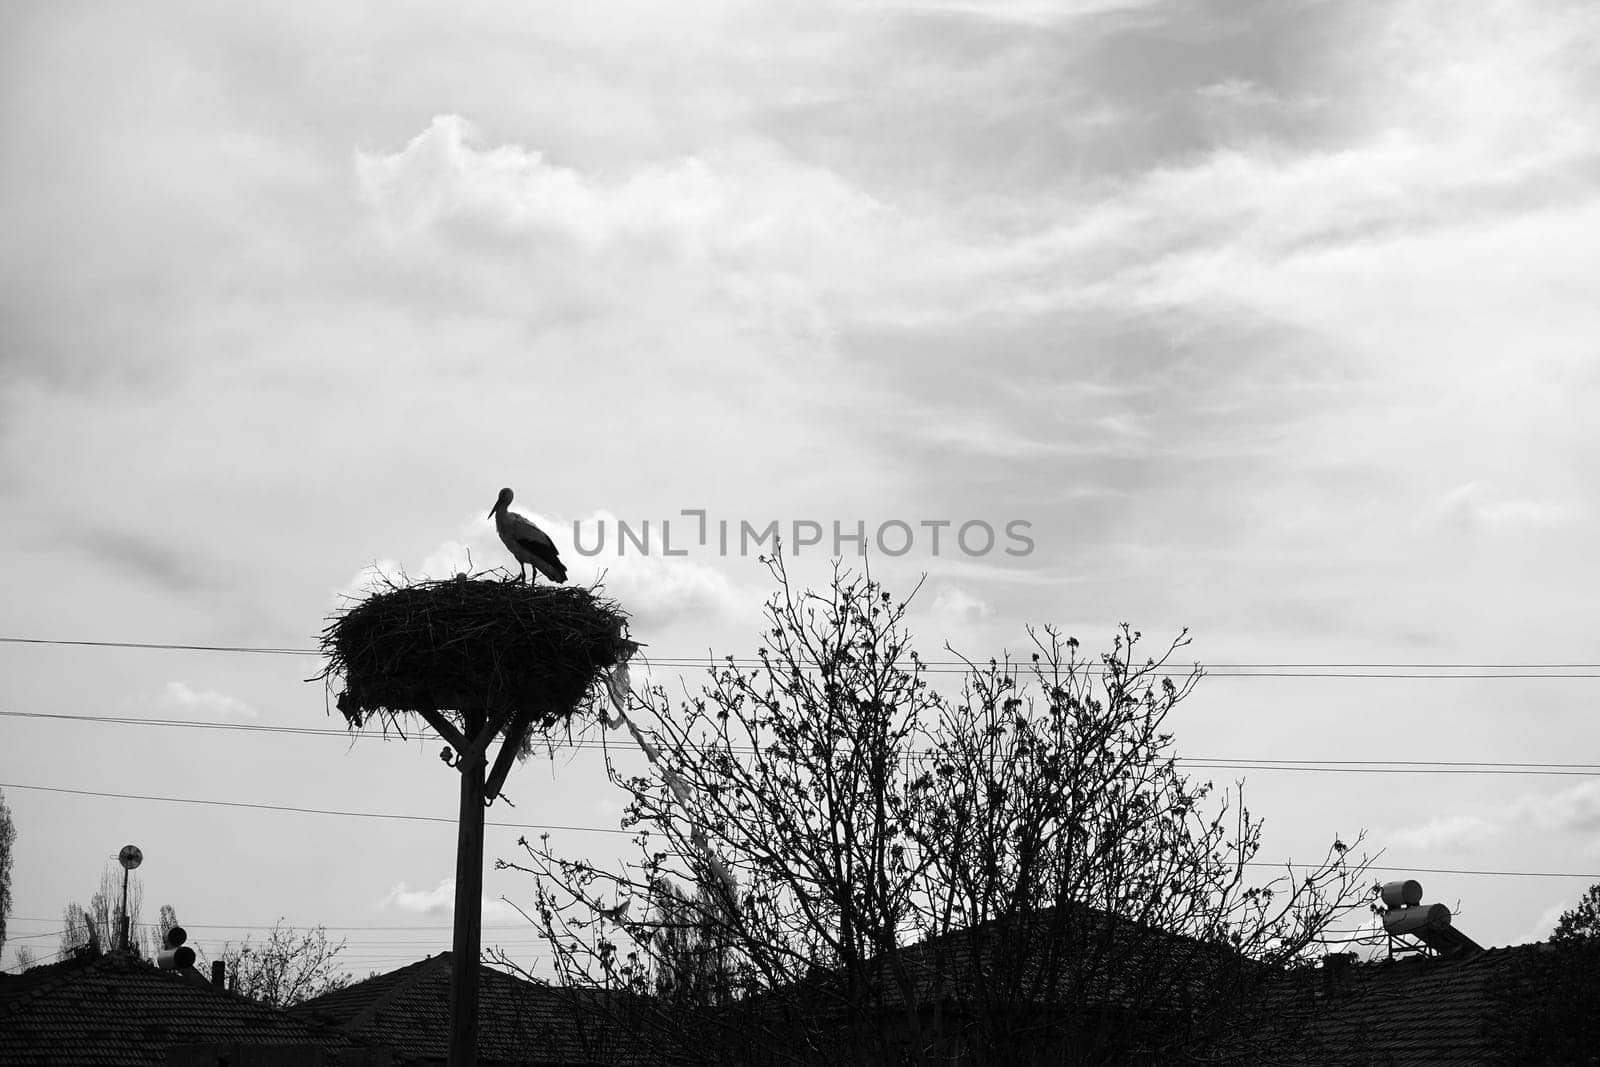 stork silhouette in stork's nest at night, stork silhouette shot,